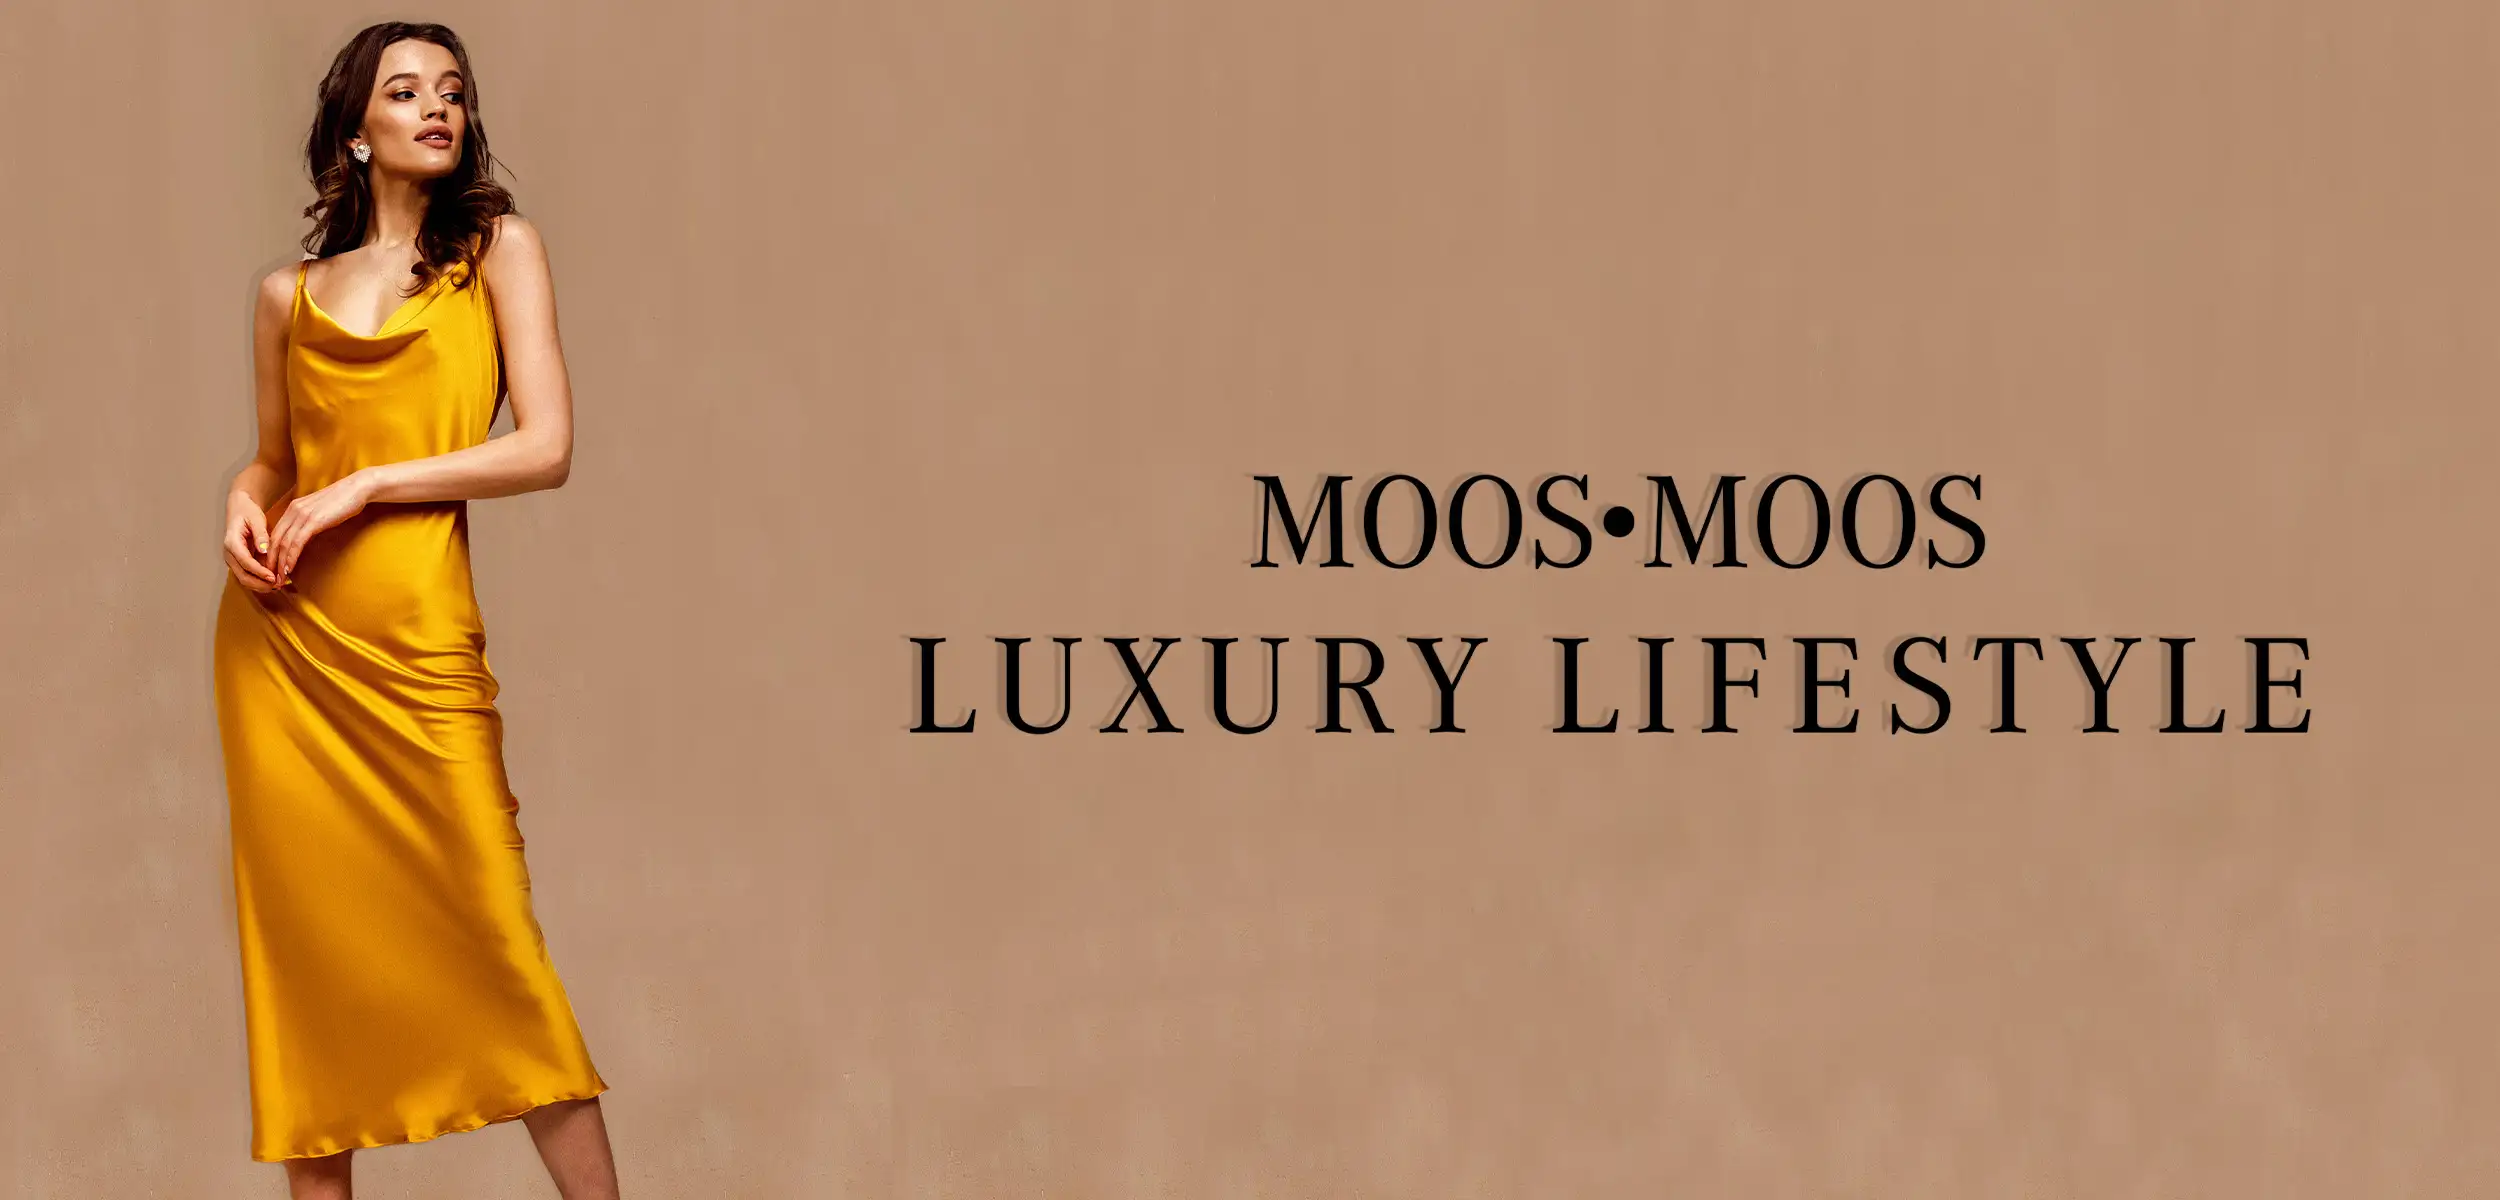 Luxury Lifestyle Titelbild. Frau im goldenen Kleid vor brauner Wand